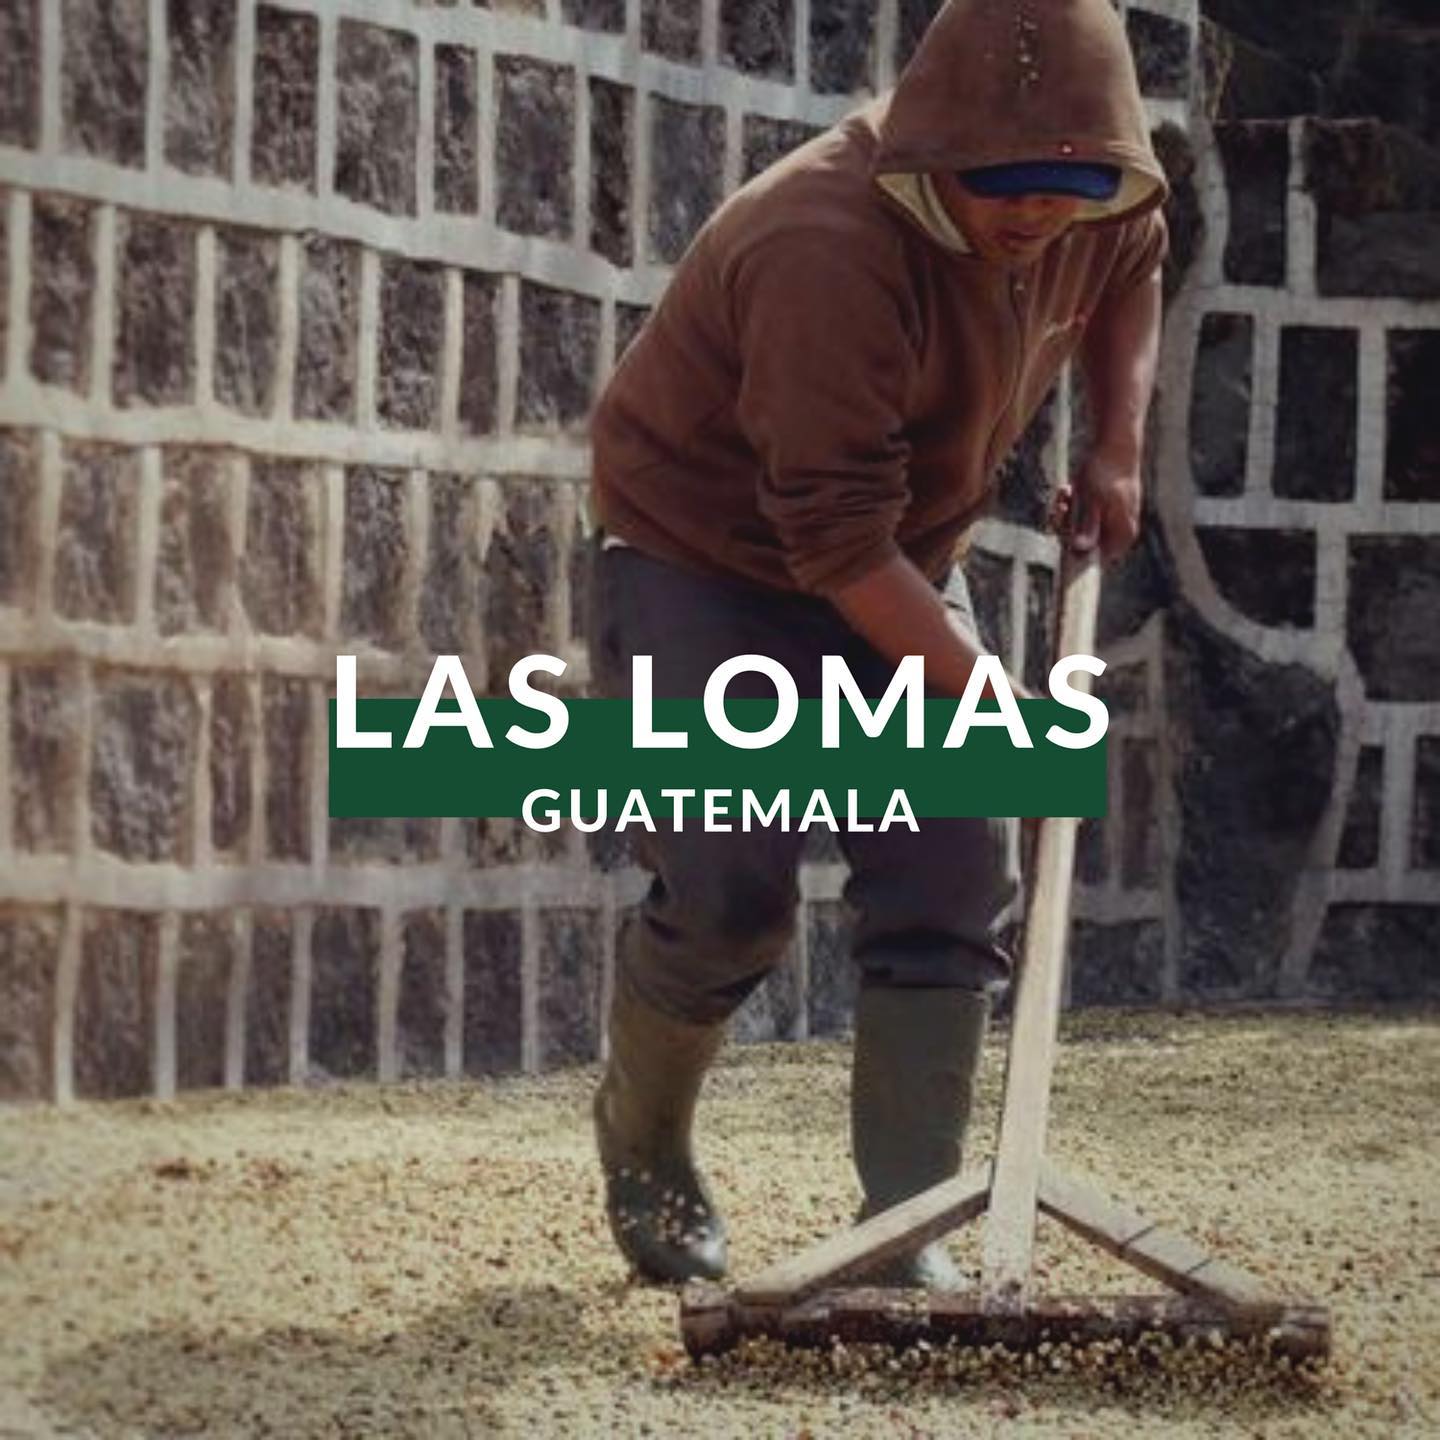 Guatemala "Las Lomas" (12 oz.)